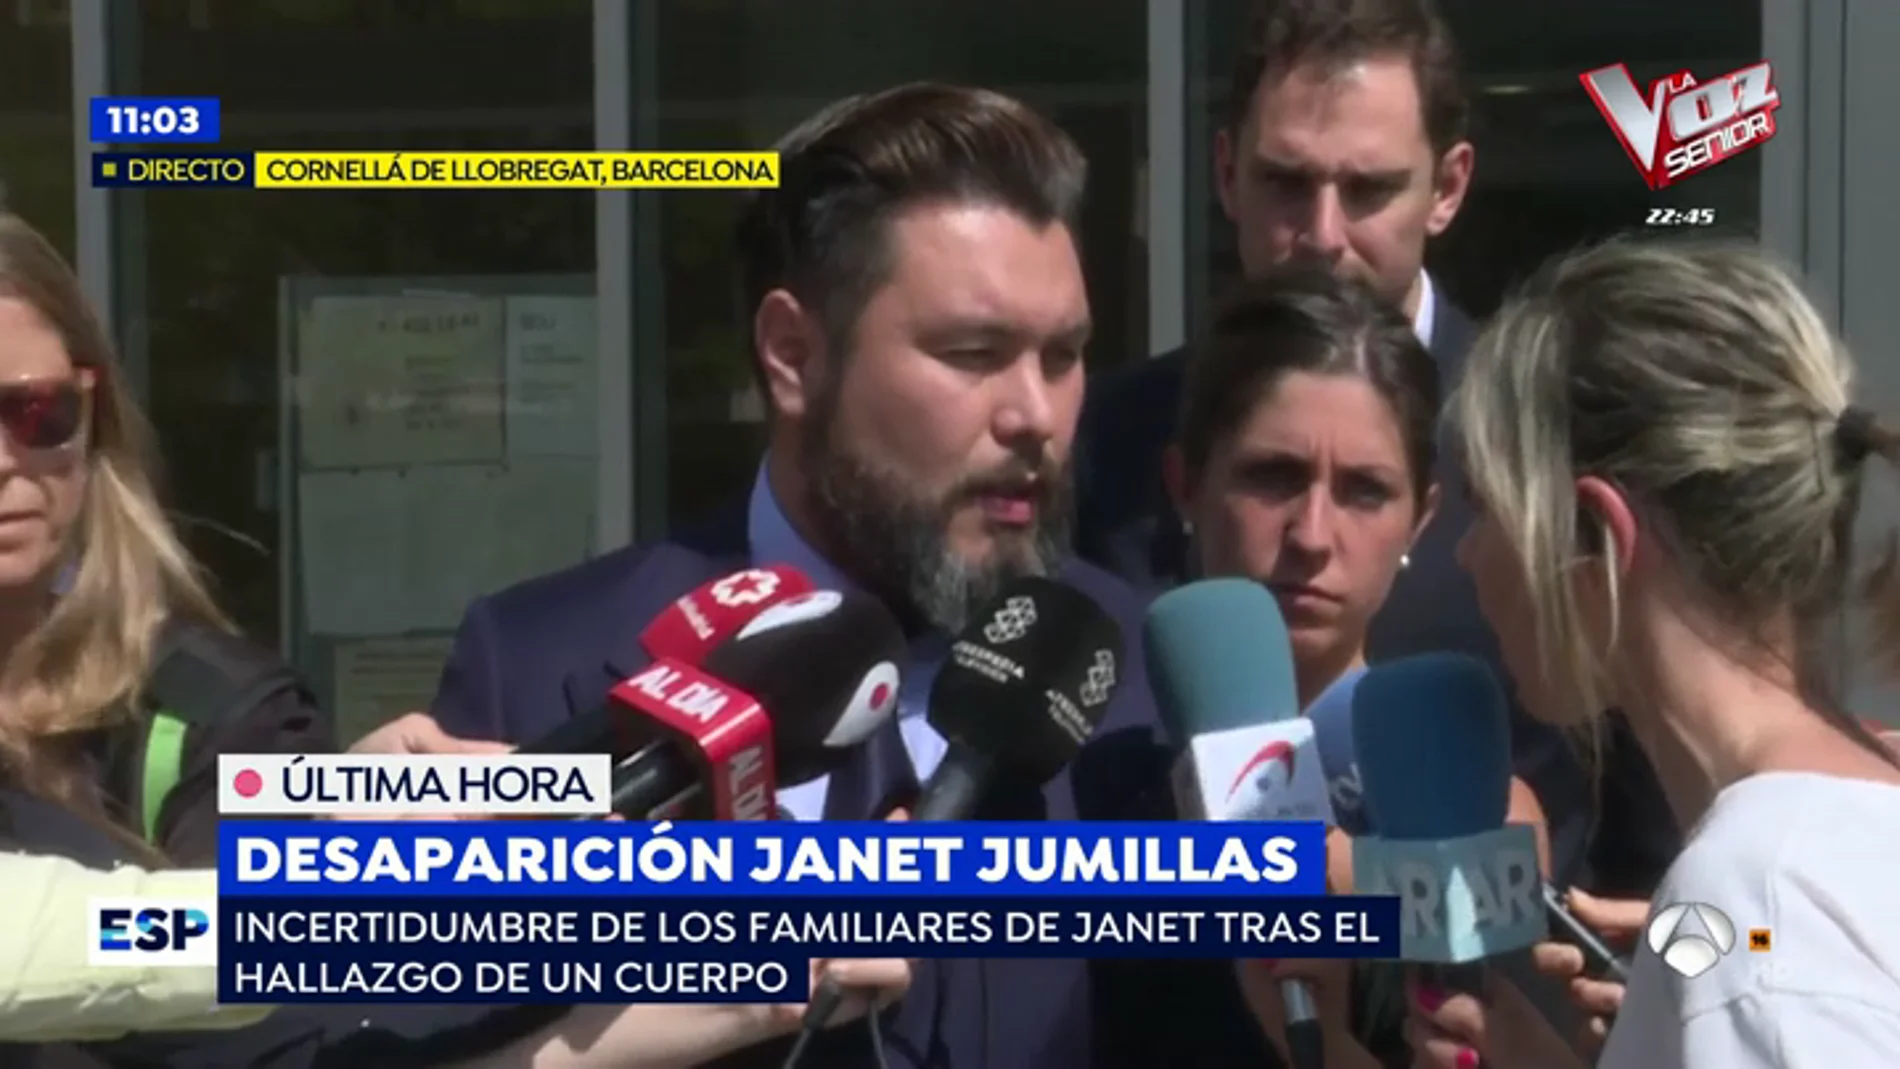 Los investigadores encuentran el móvil de Janet Jumillas: "Creemos al 99,9% que es ella"